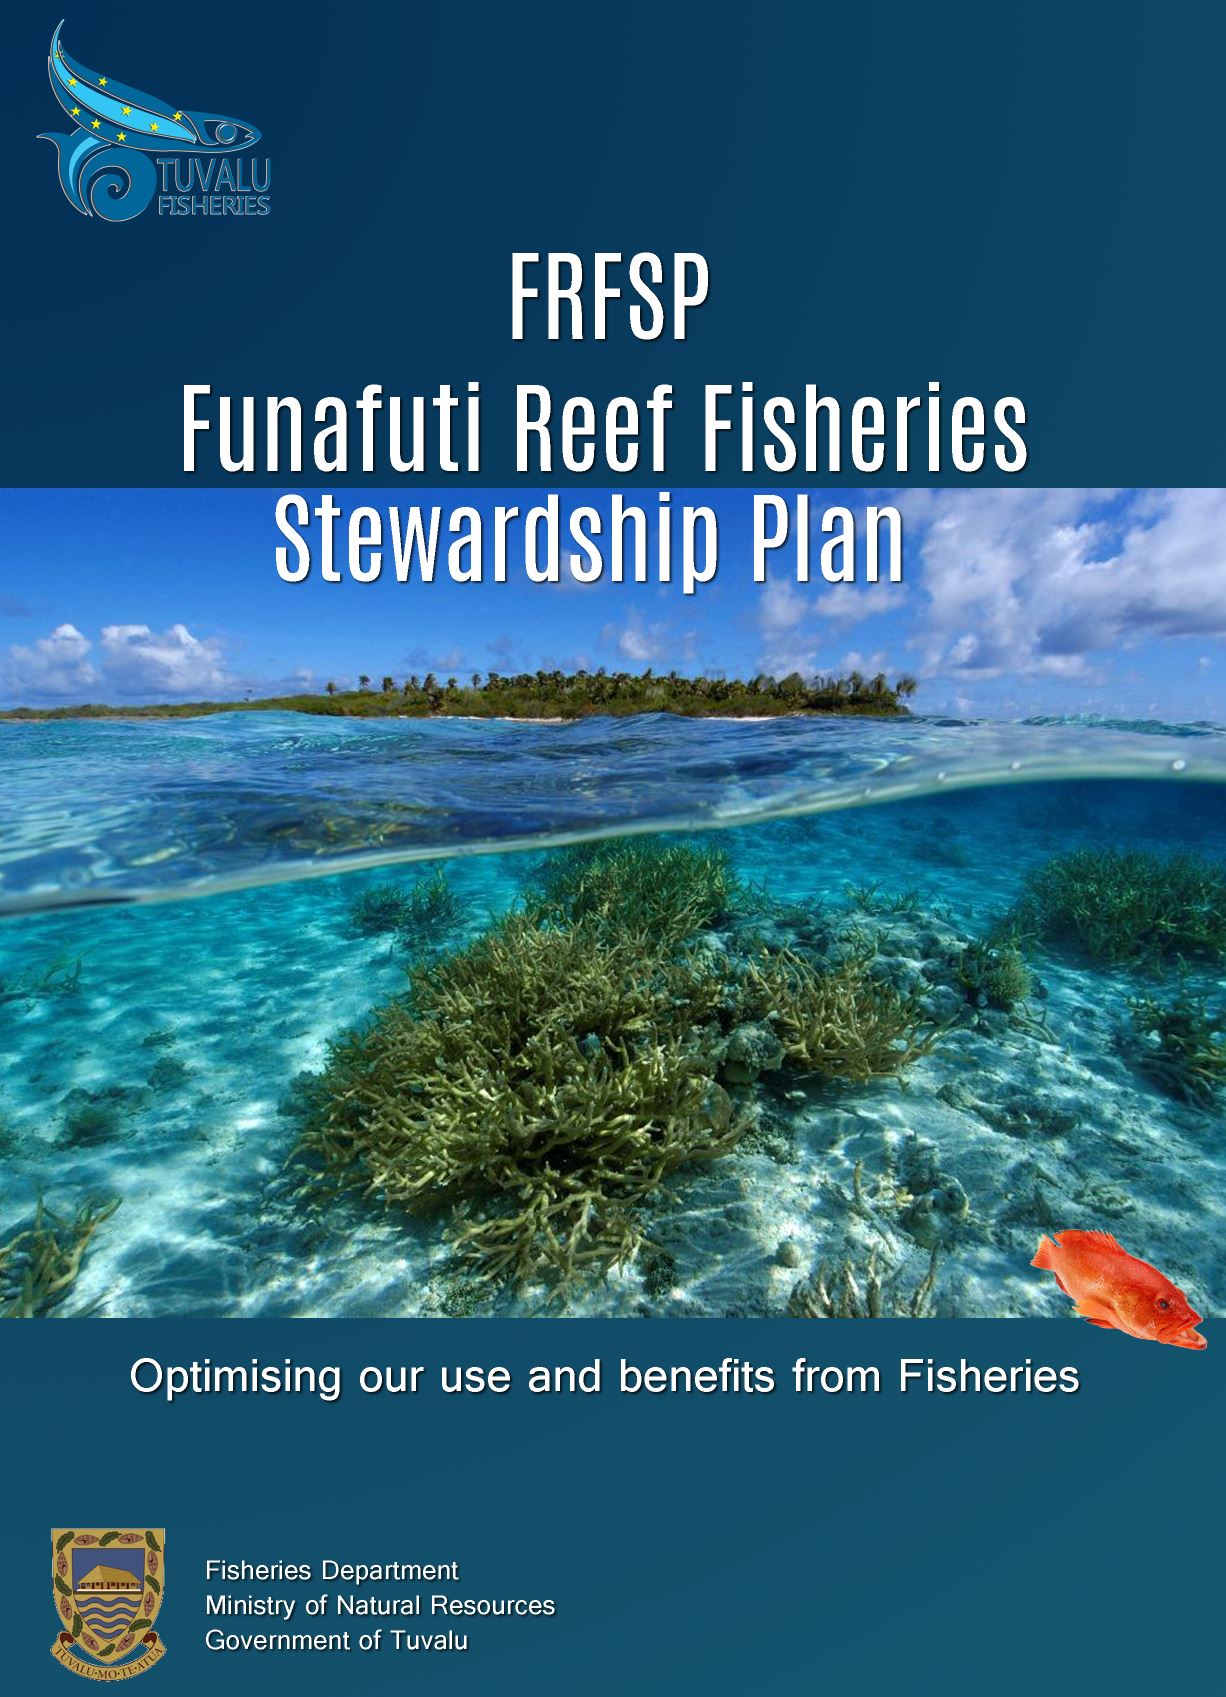 Funafuti Reef Fisheries Stewardship Plan (FRFSP)